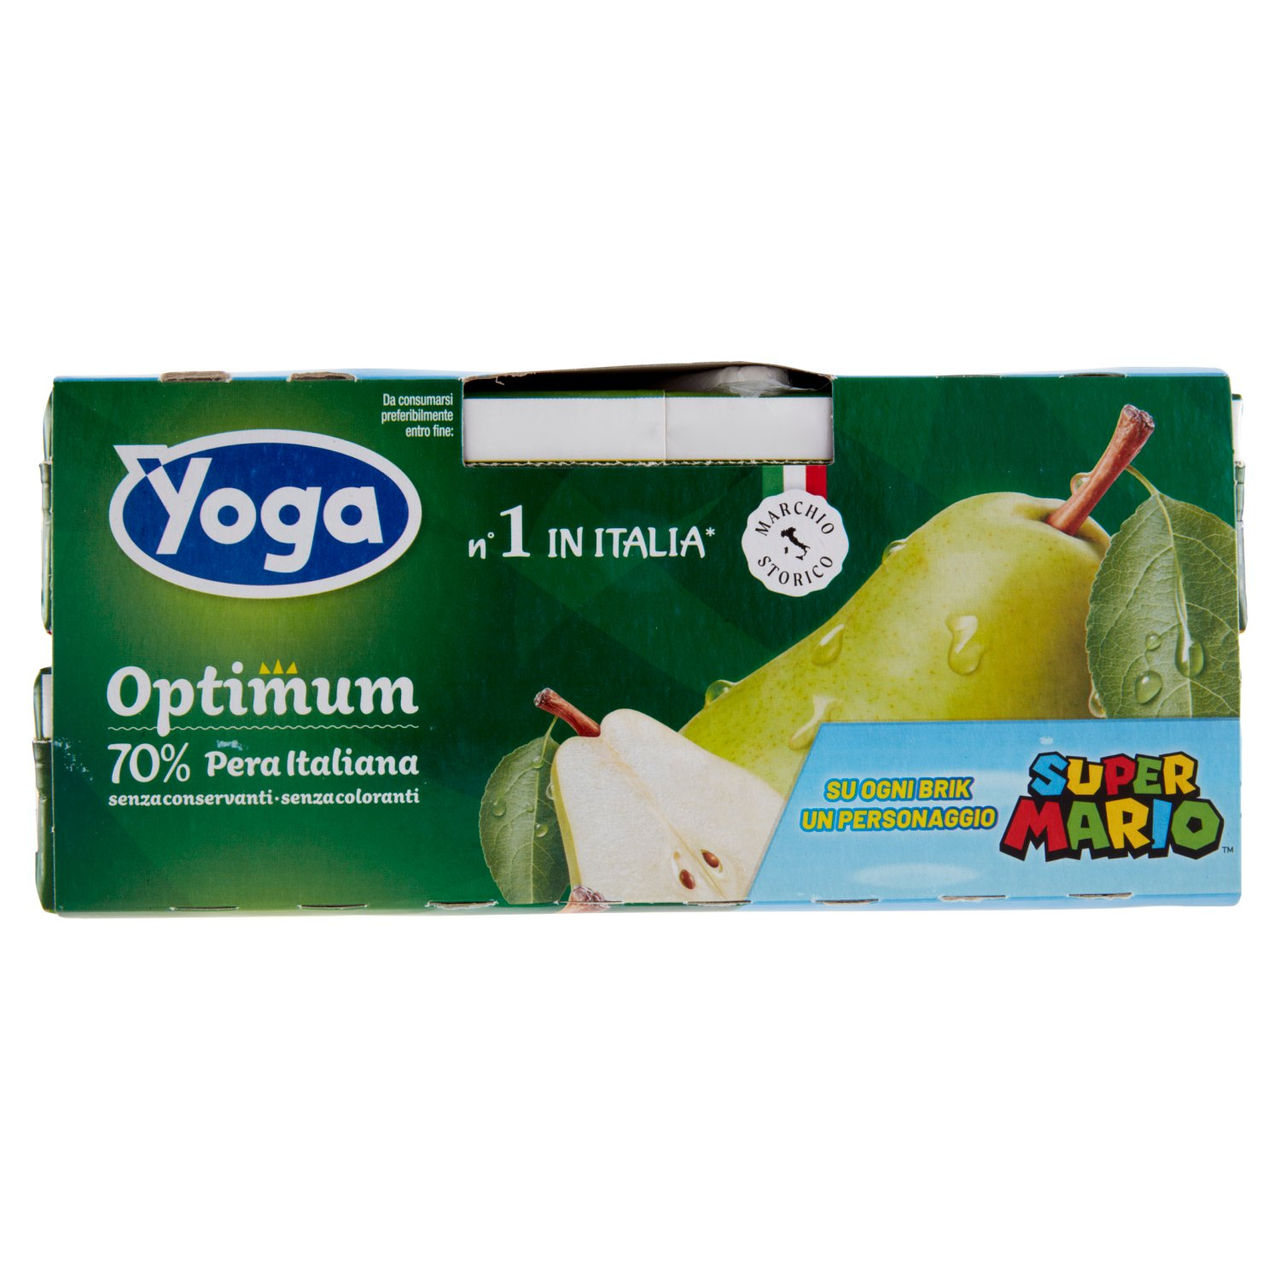 Yoga Optimum 70% Pera Italiana in vendita online